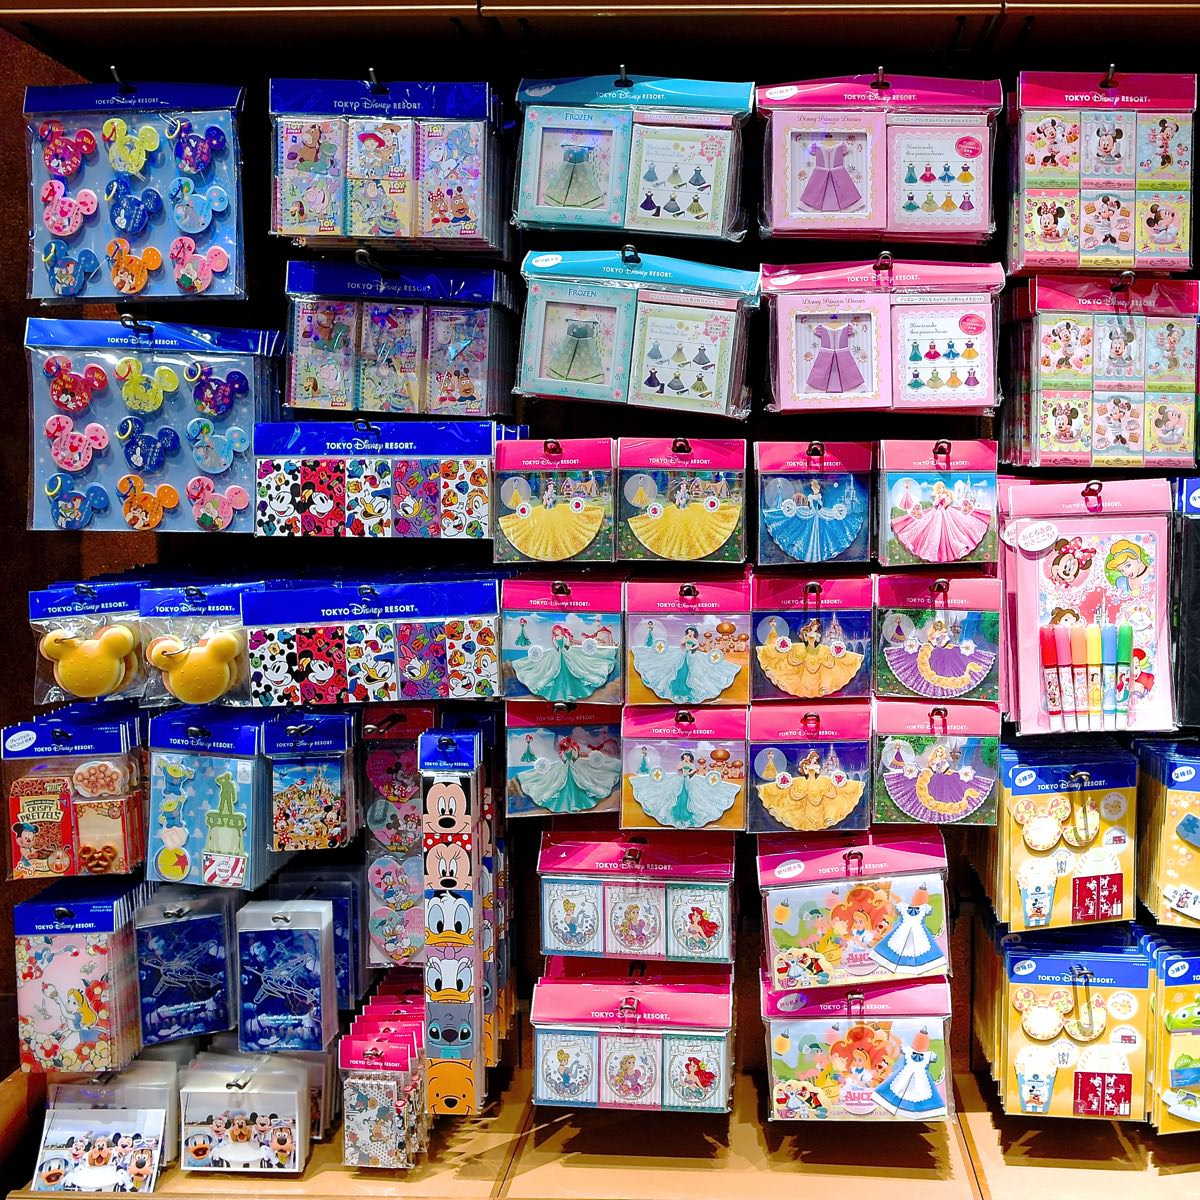 折り紙メモも盛りだくさん 東京ディズニーランド16秋冬メモまとめ